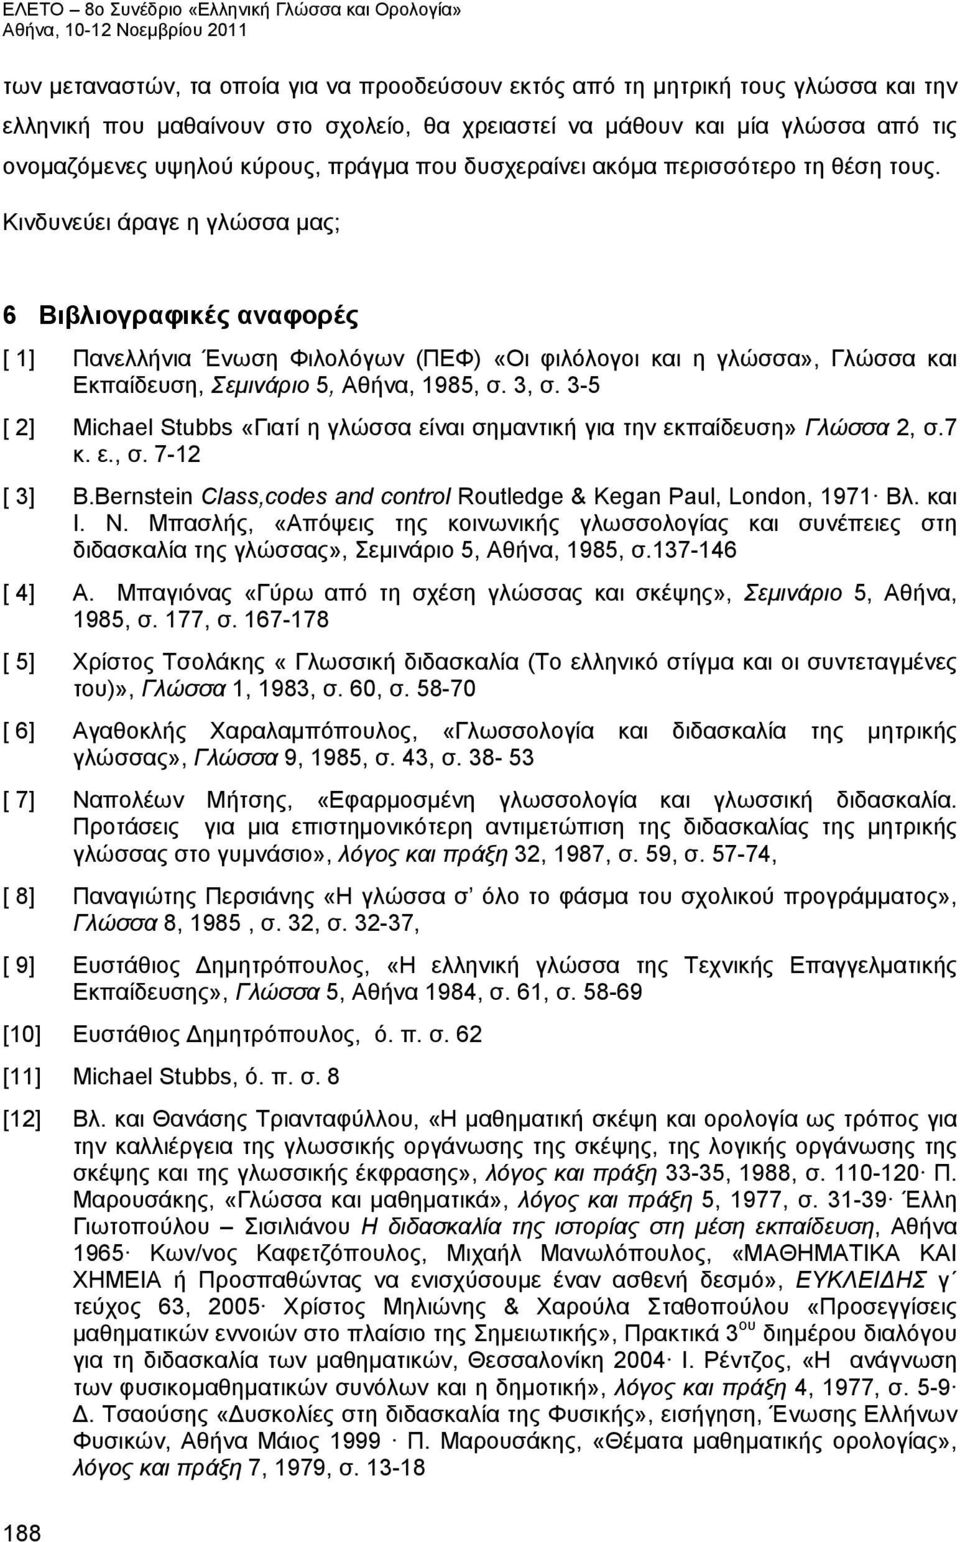 Κινδυνεύει άραγε η γλώσσα μας; 6 Βιβλιογραφικές αναφορές [ 1] Πανελλήνια Ένωση Φιλολόγων (ΠΕΦ) «Οι φιλόλογοι και η γλώσσα», Γλώσσα και Εκπαίδευση, Σεμινάριο 5, Αθήνα, 1985, σ. 3, σ.